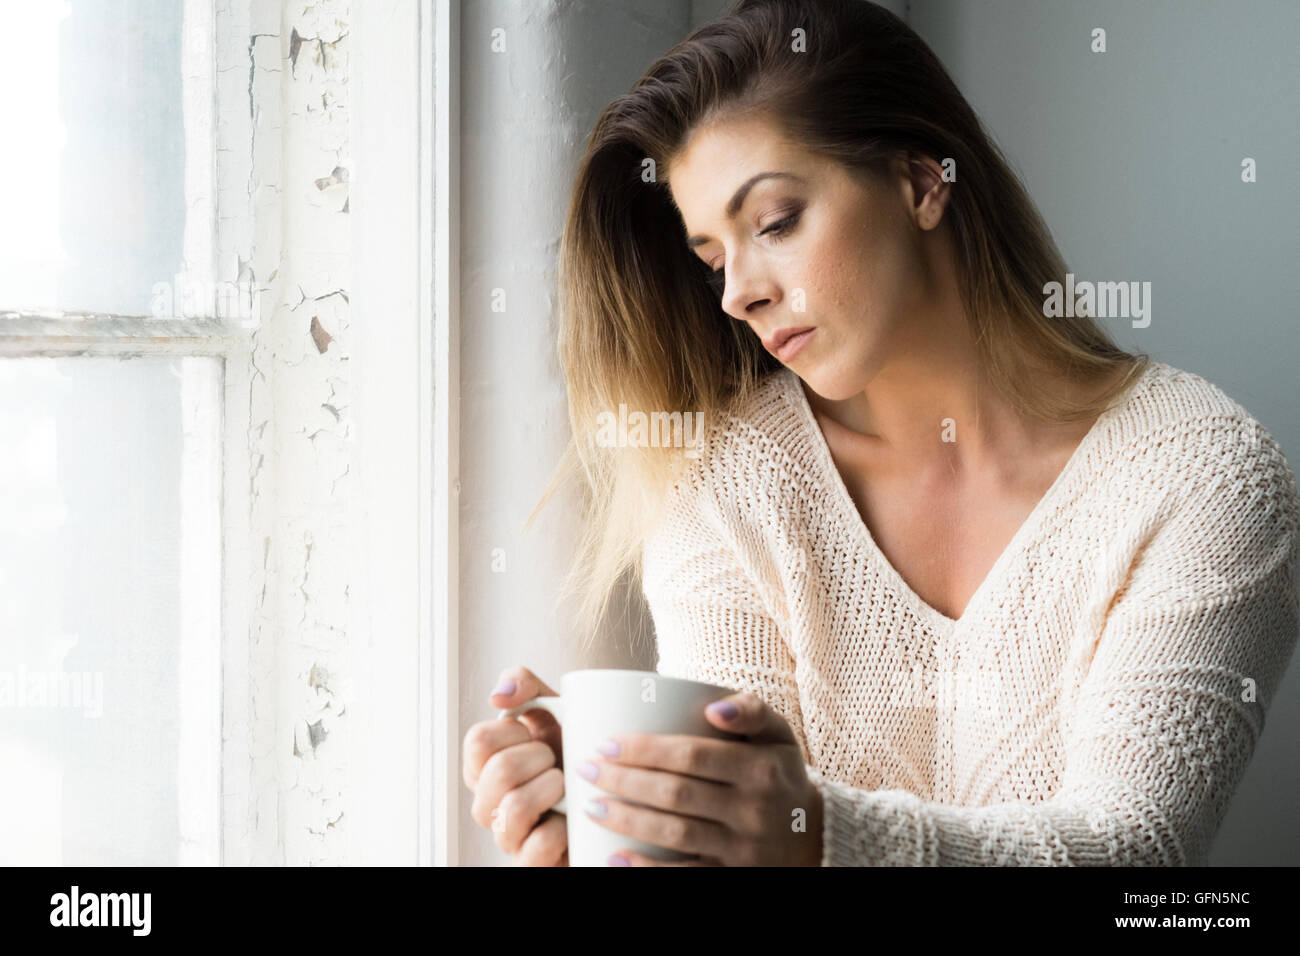 Mujer de 20 años contempla la vida sobre una bebida caliente Foto de stock